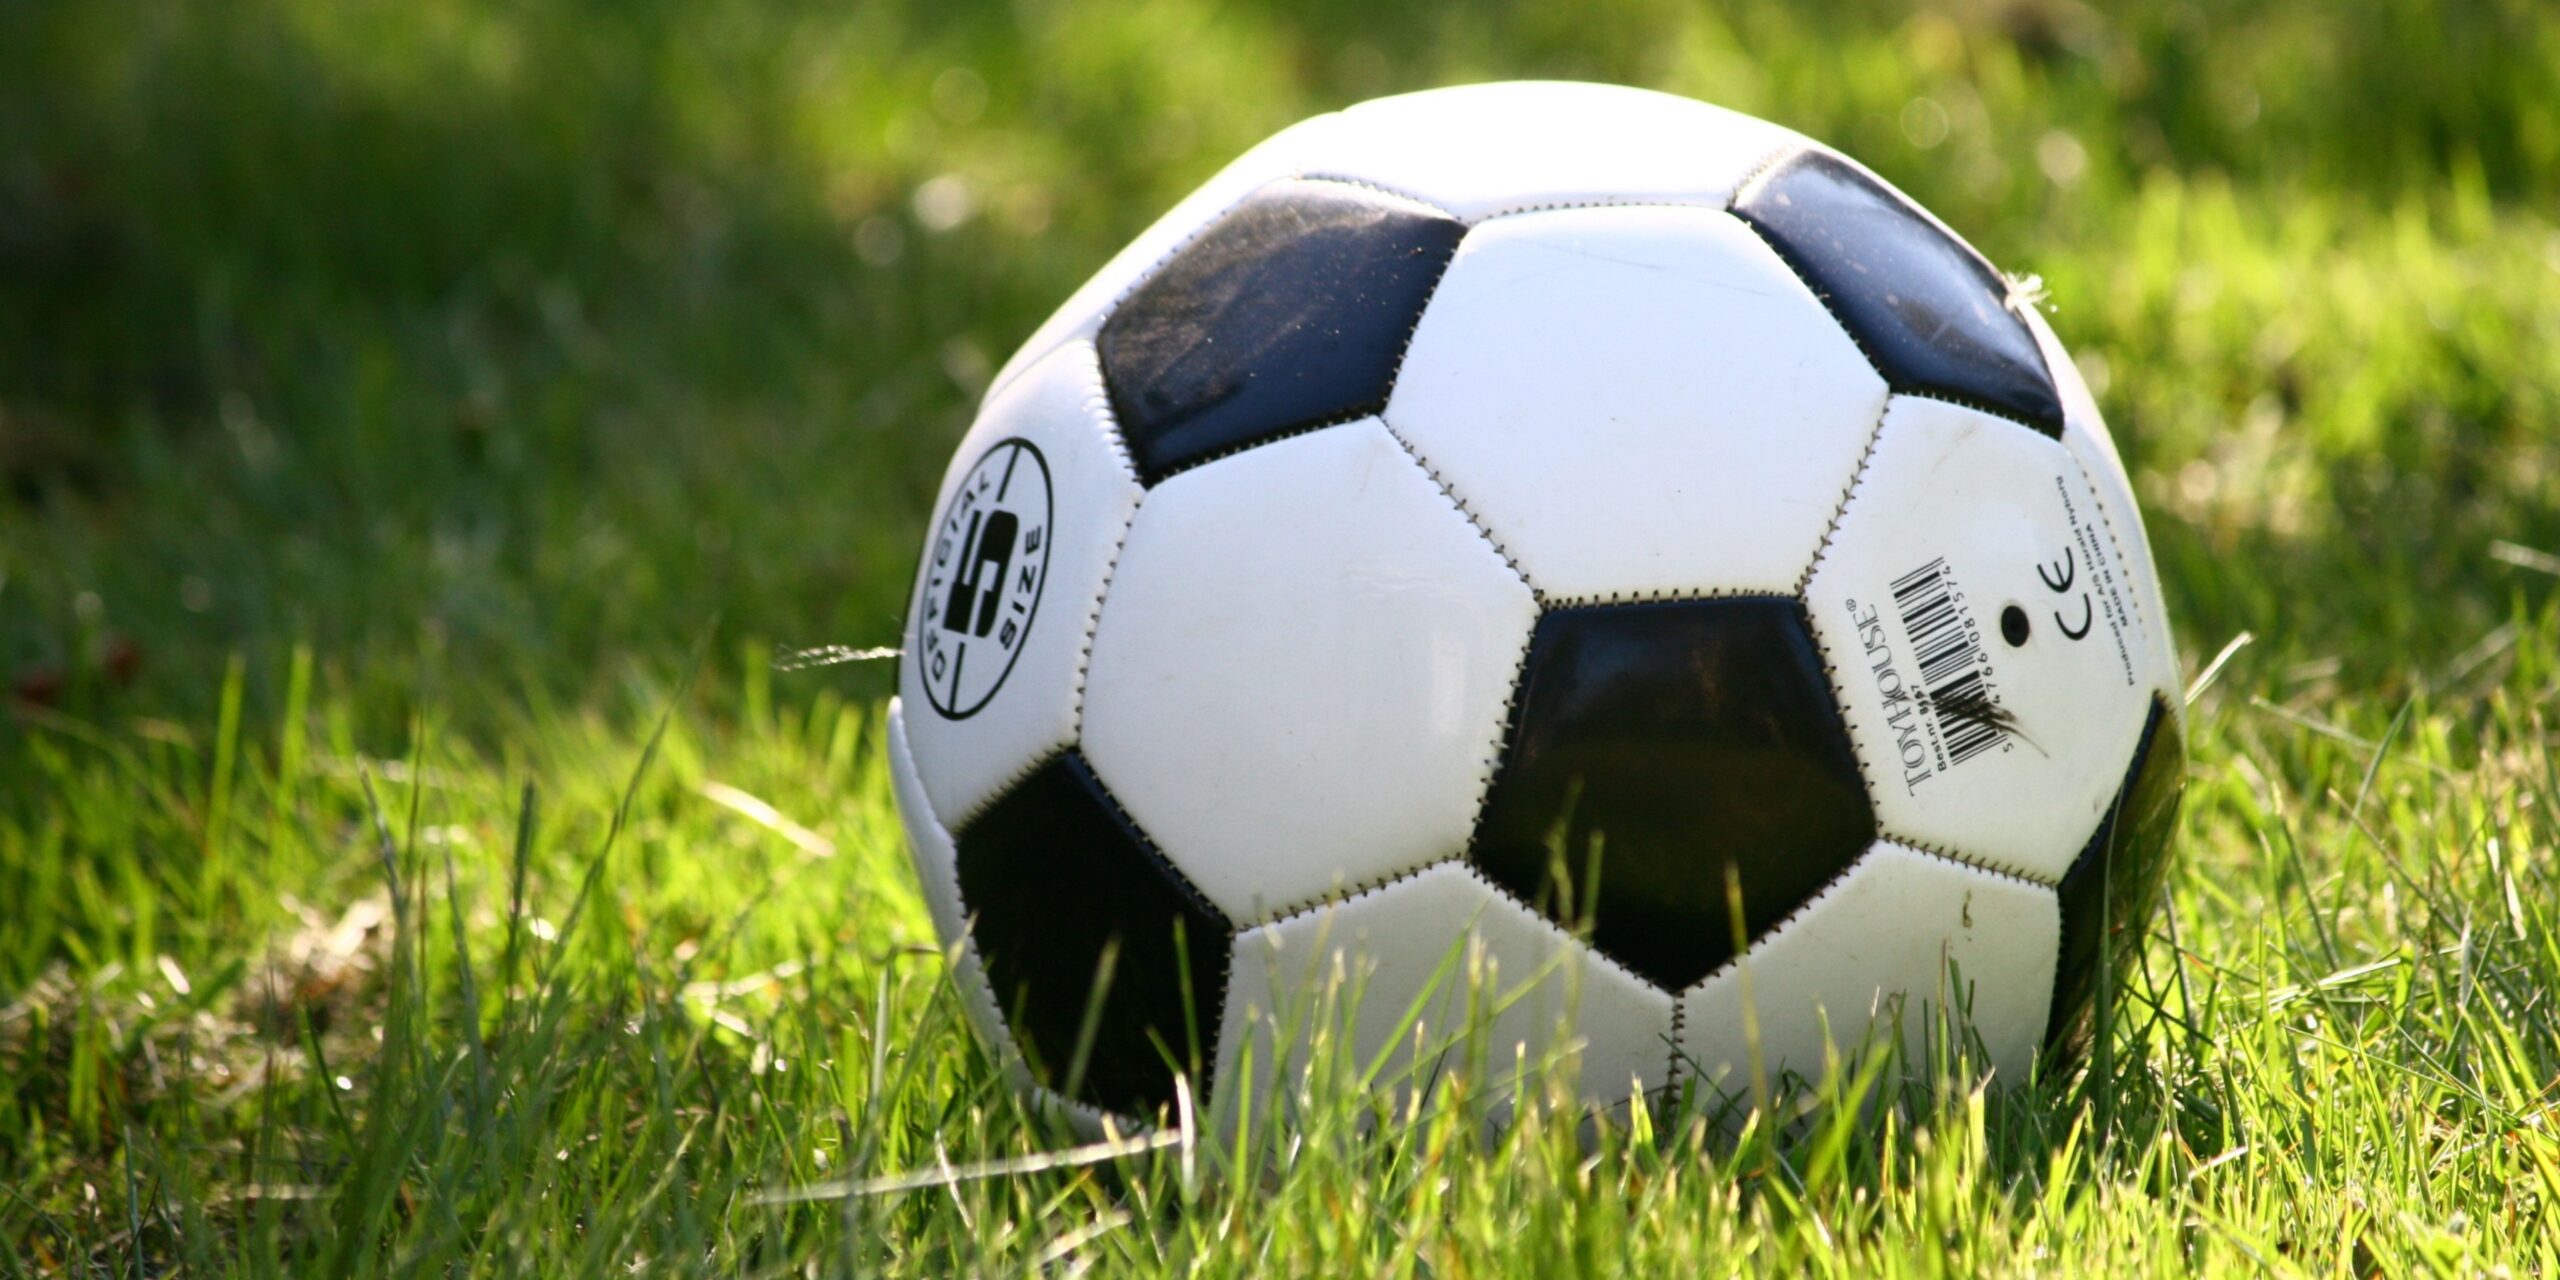 “Voetbal is simpel. Maar simpel voetballen blijkt vaak het moeilijkste wat er is” – Johan Cruijff